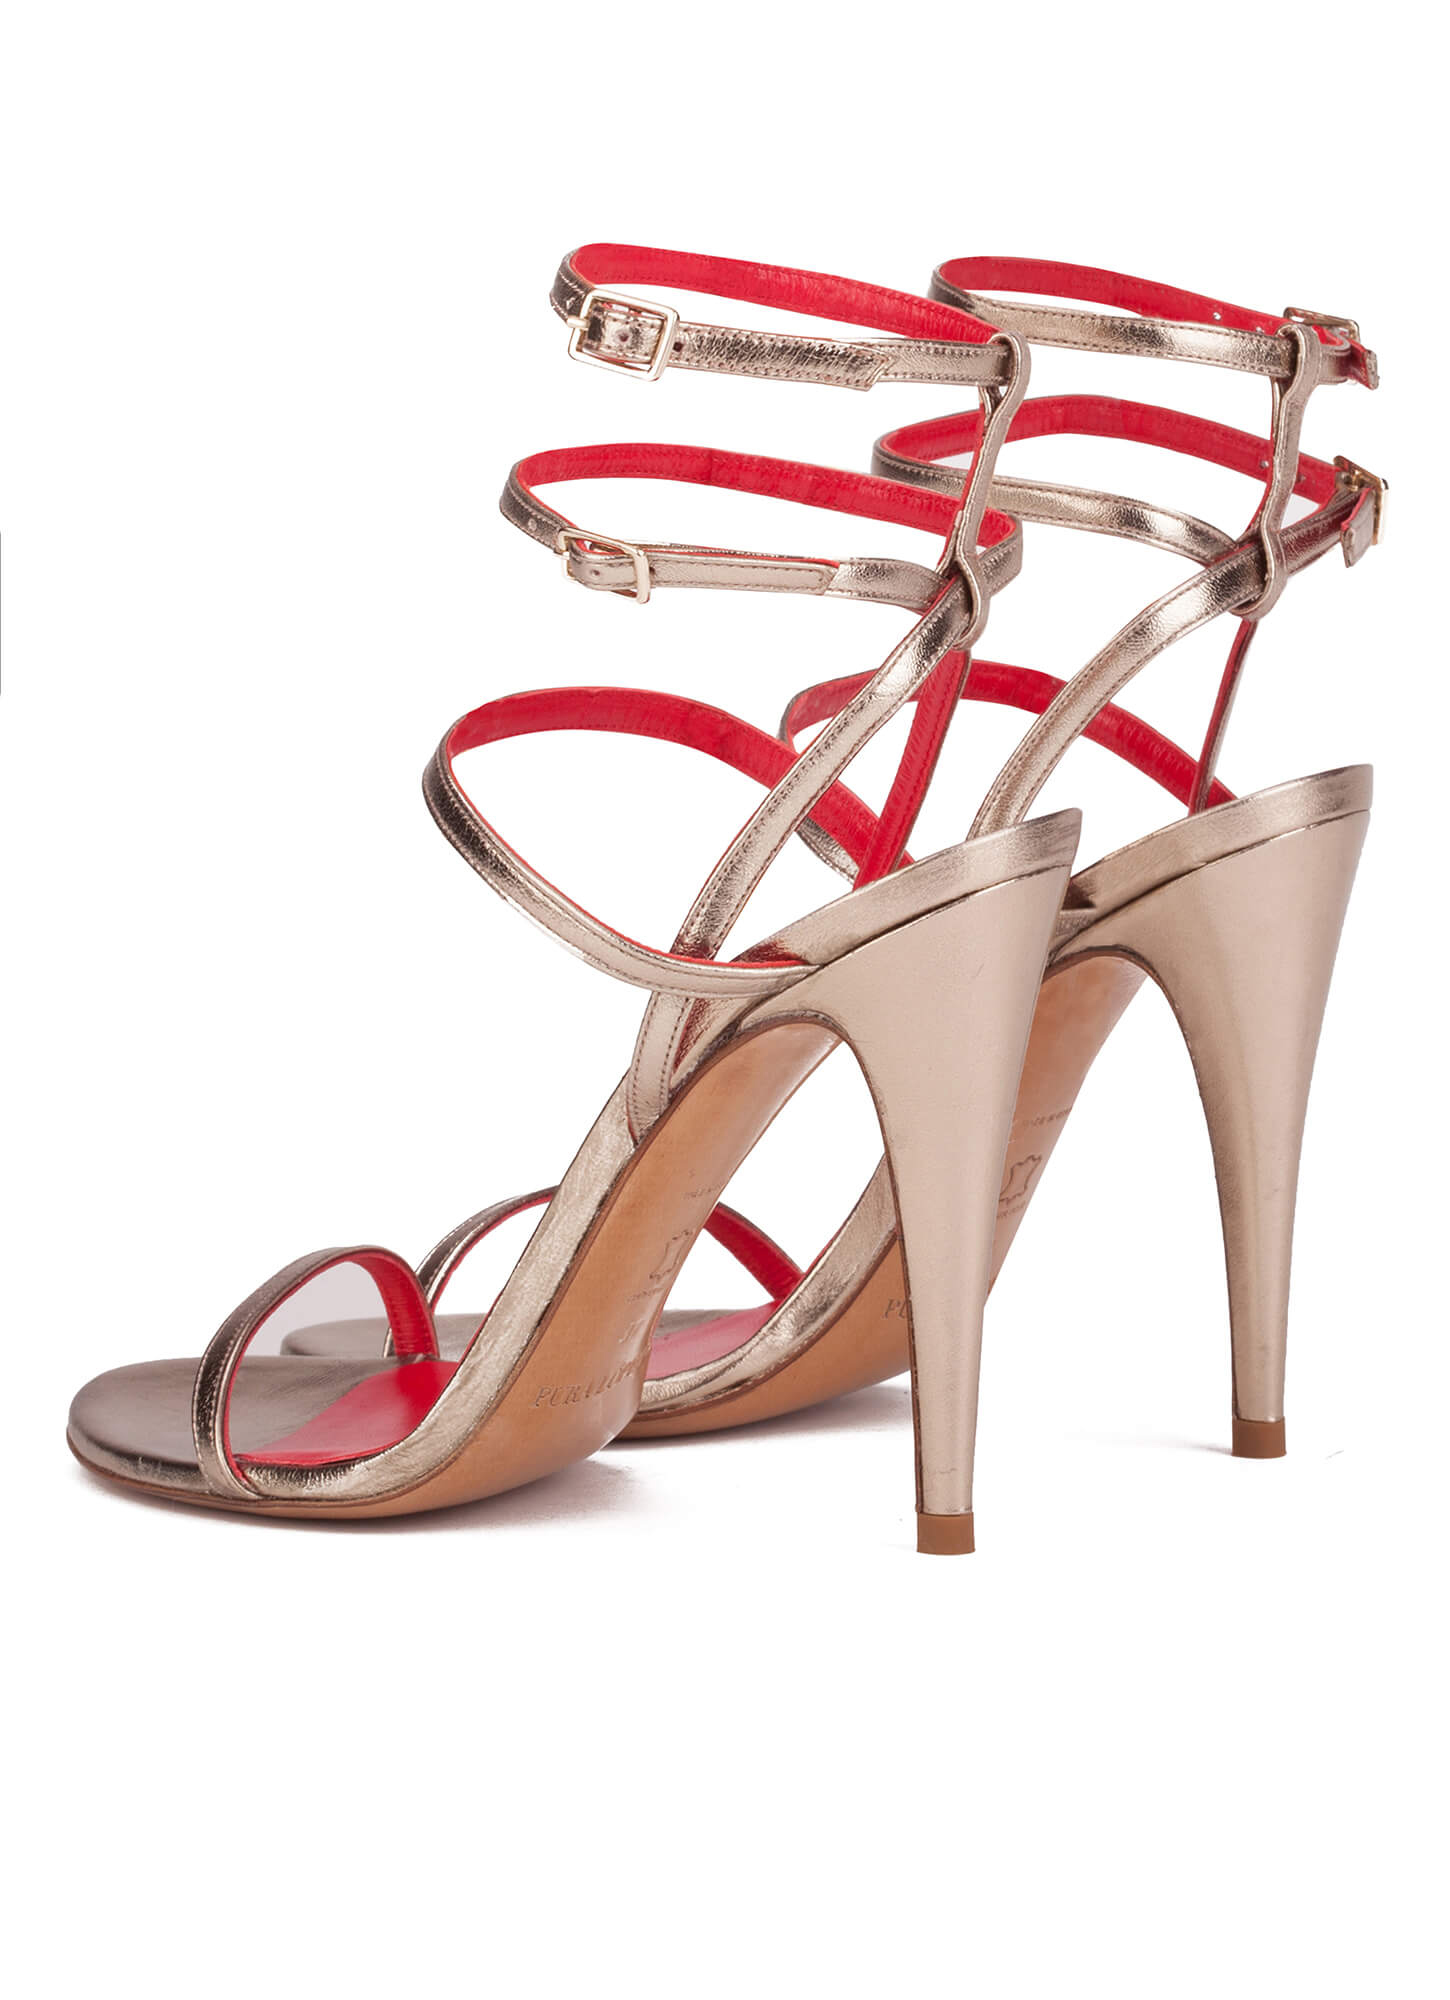 Ankle strap high heel sandals - online shoe store Pura Lopez . PURA LOPEZ